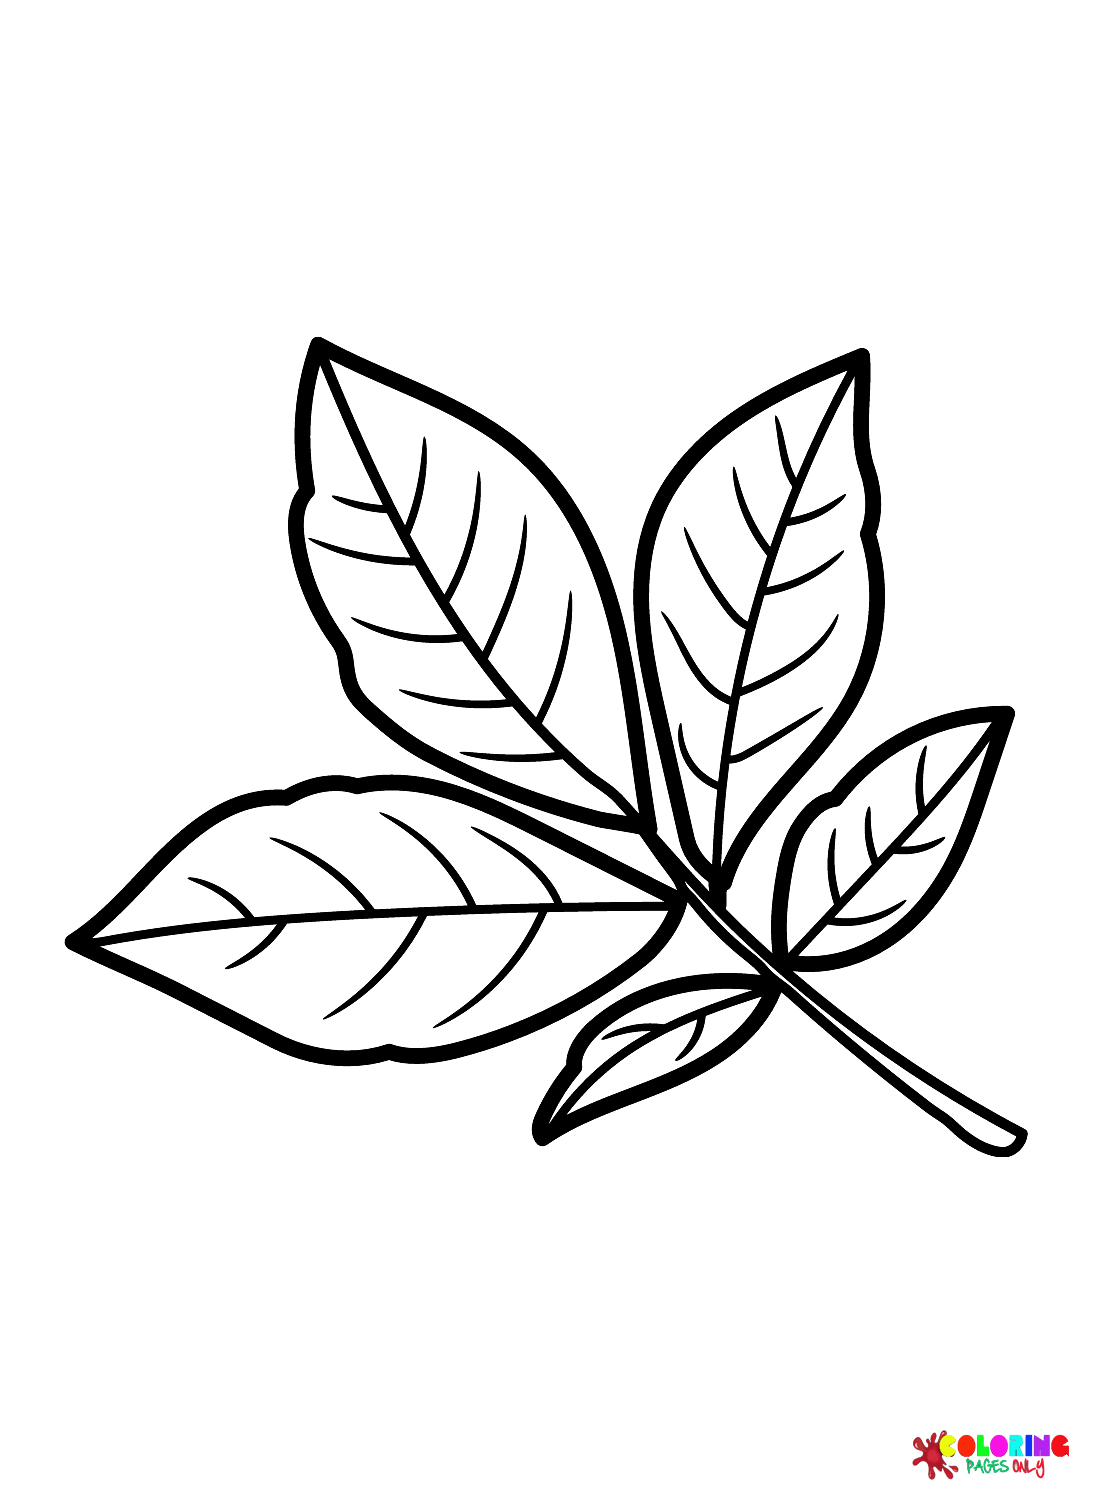 Foglia di Shagbark Hickory dalle foglie